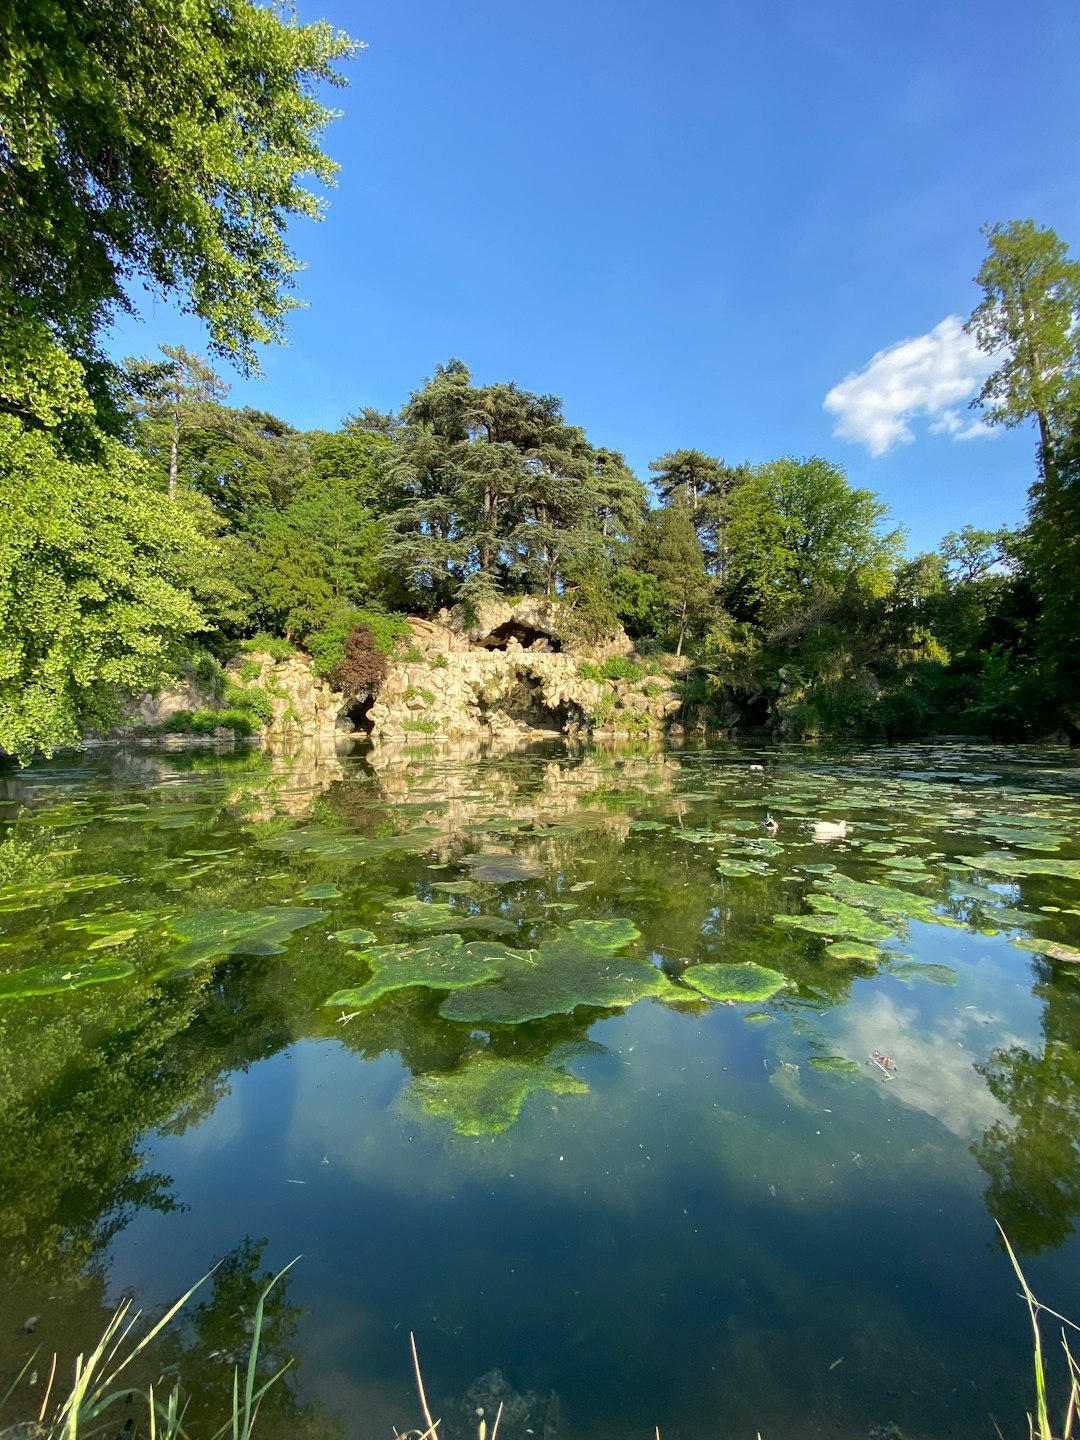 Nature reserve photo spot Bois de Boulogne Paris